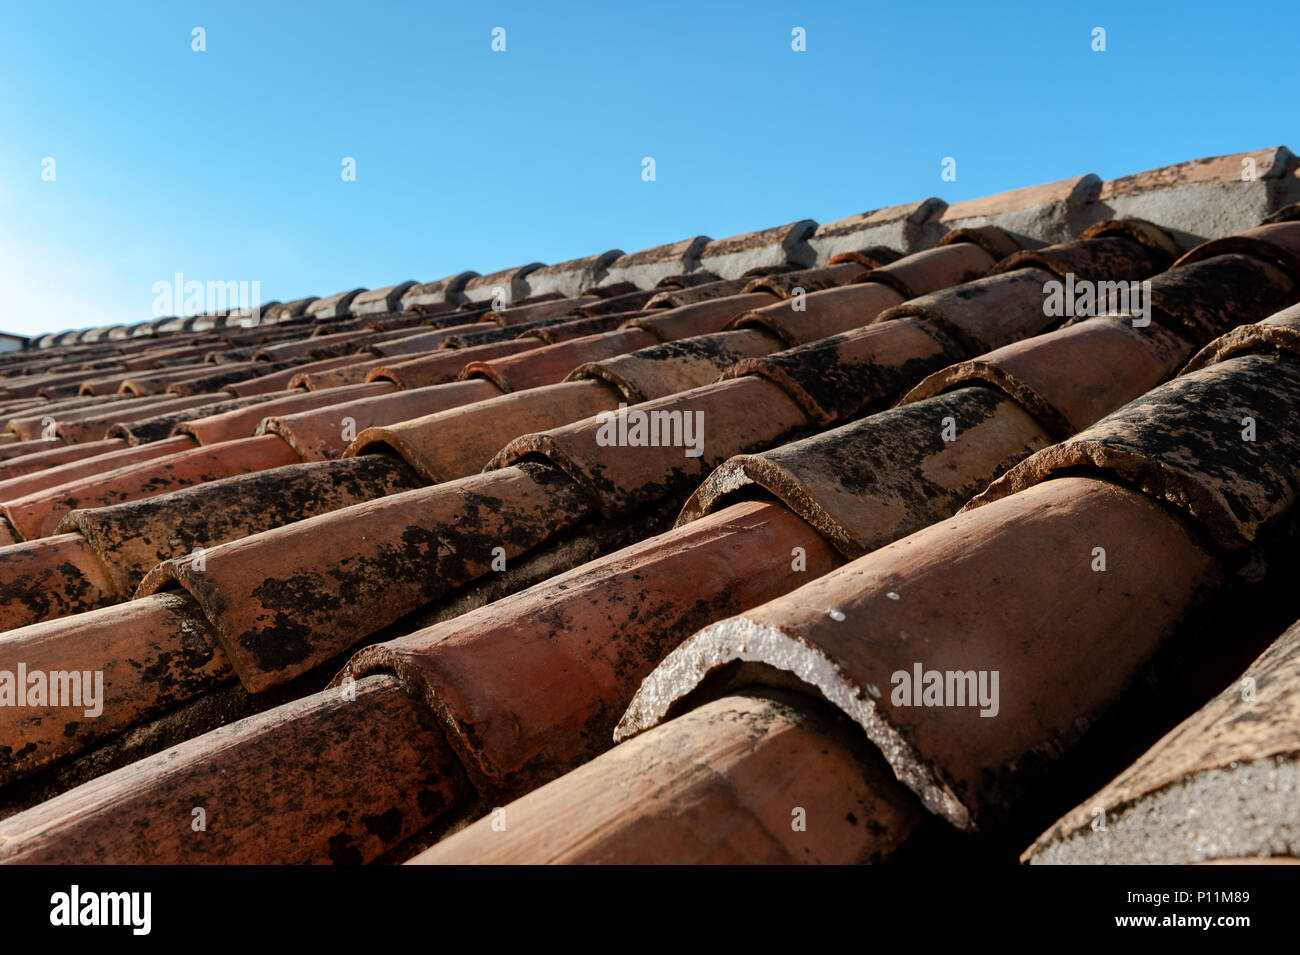 Lo spagnolo tegole del tetto in una giornata chiara a Malaga, Costa del Sol, Spagna Con copia spazio. Foto Stock